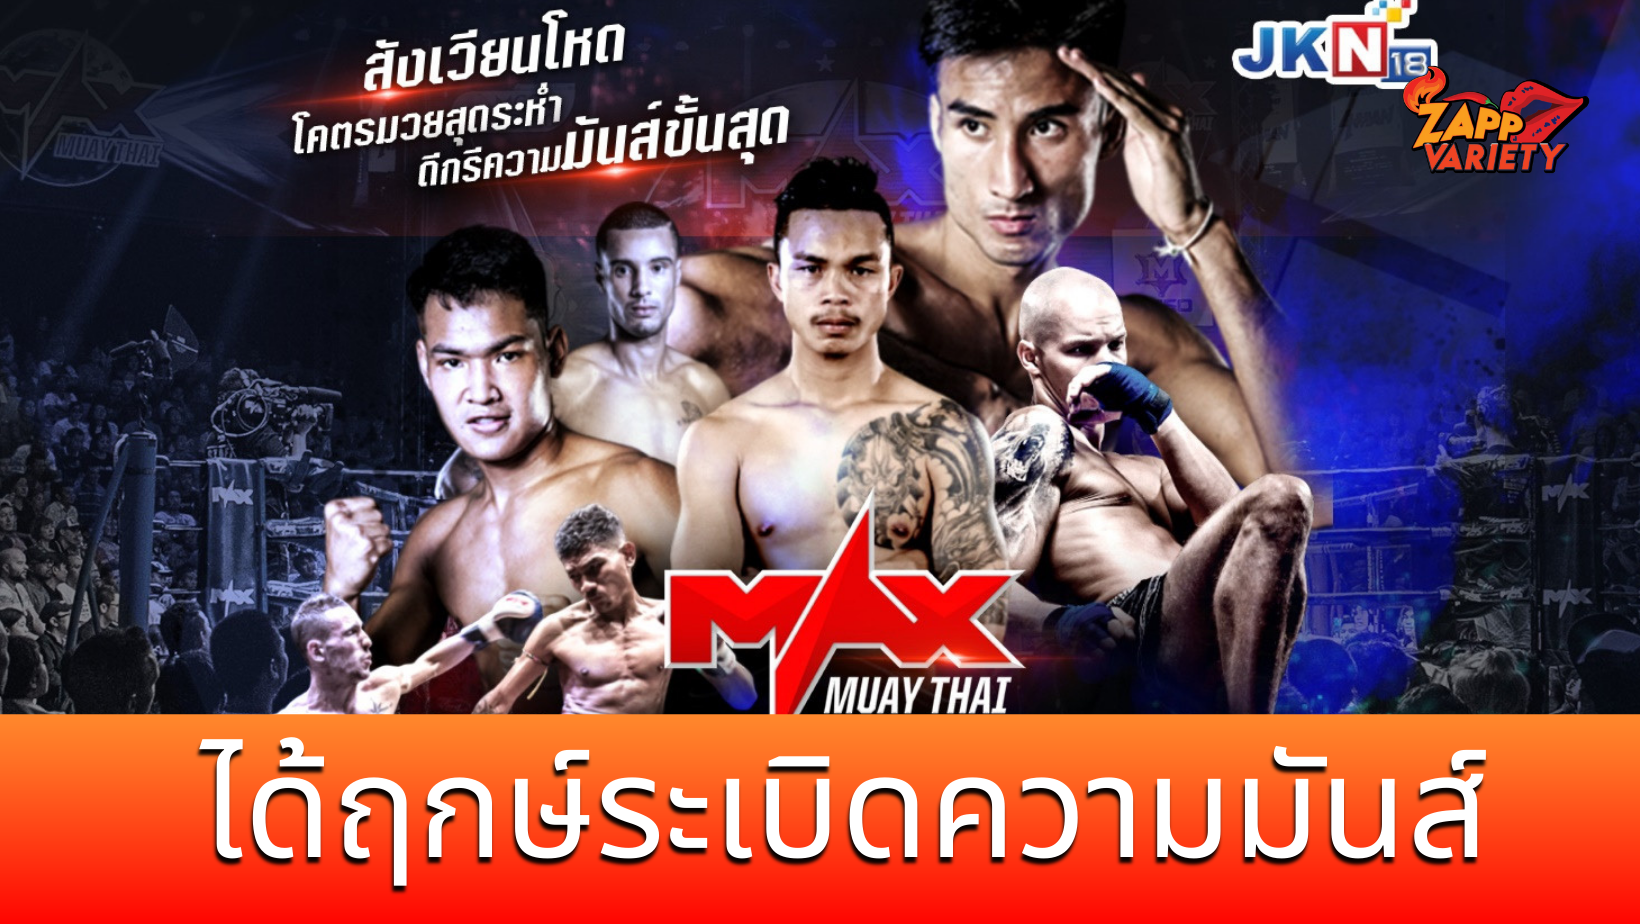 สมการรอคอย “แม็กซ์ มวยไทย” ได้ฤกษ์ระเบิดความมันส์ ผ่านช่องทีวี JKN18  